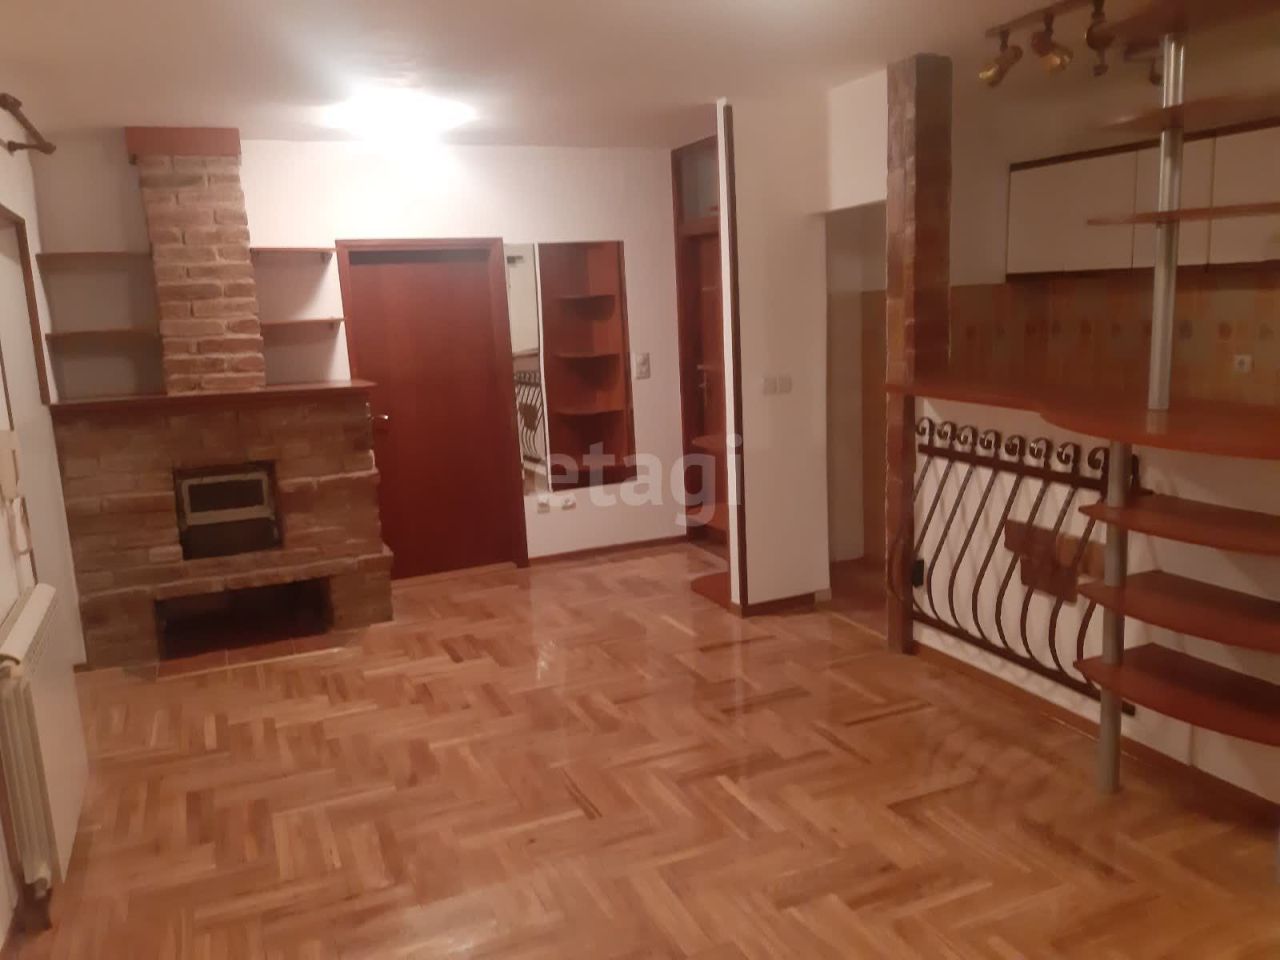 Квартира в Белграде, Сербия, 63 м² - фото 1